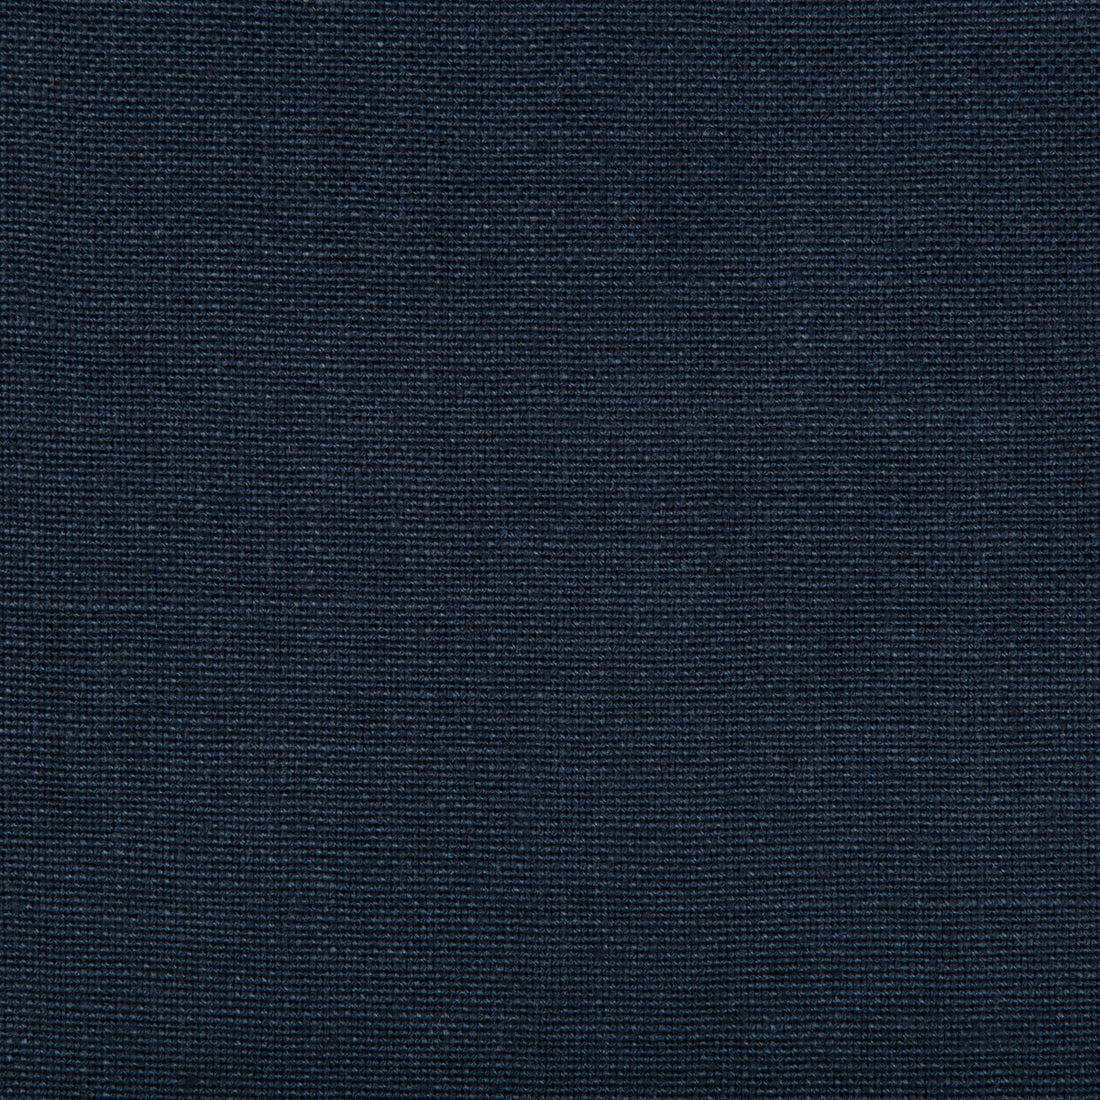 Kravet Basics fabric in 35342-50 color - pattern 35342.50.0 - by Kravet Basics